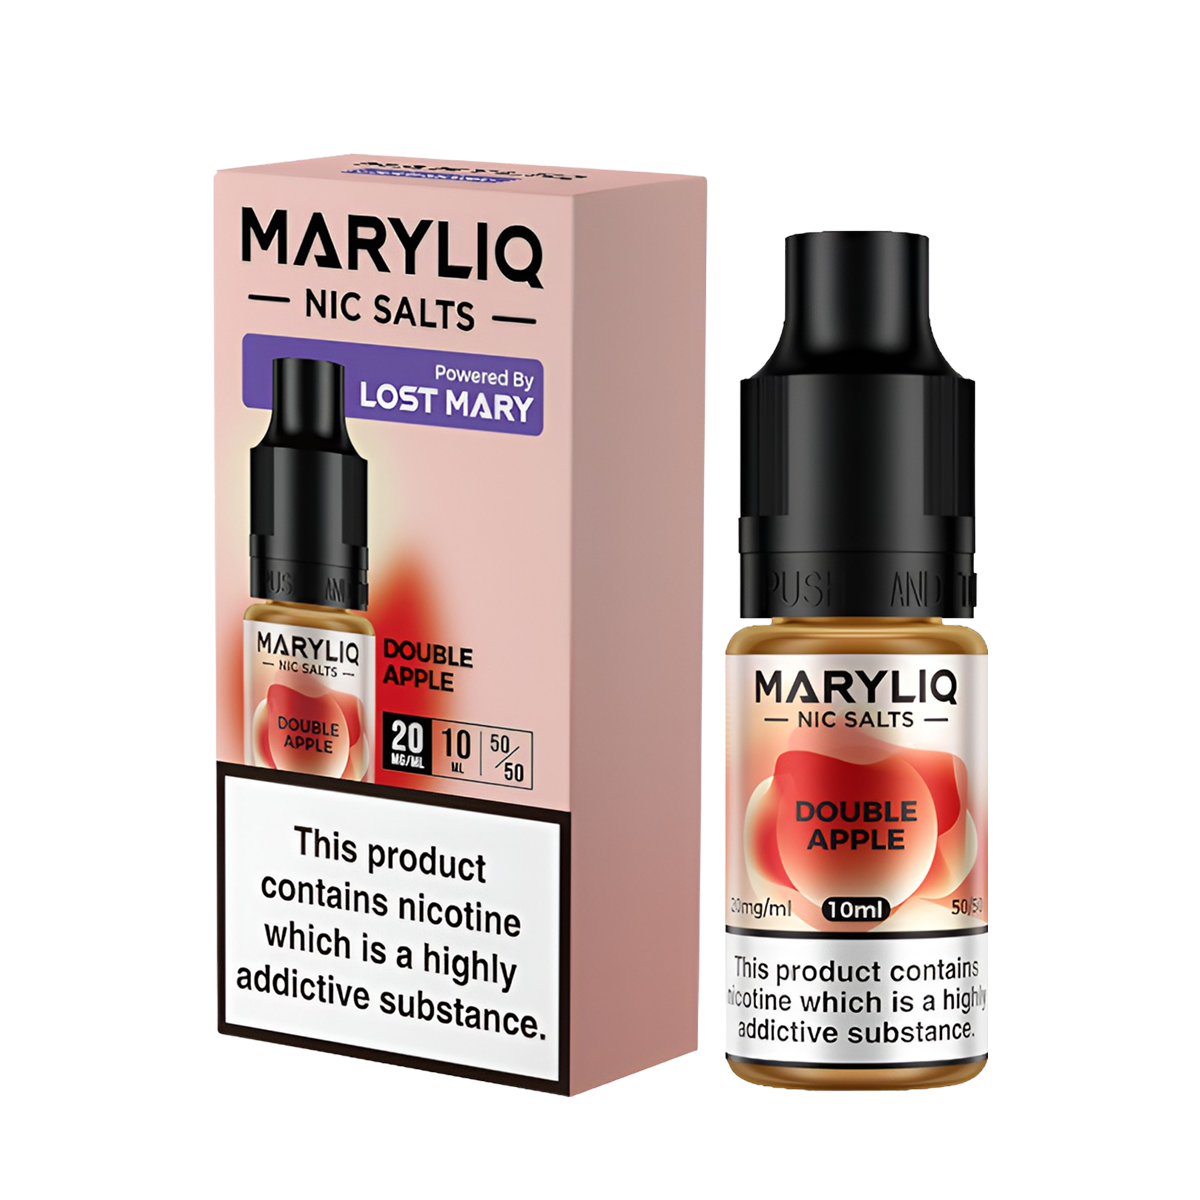 Lost Mary Maryliq Salt Nicotine Vape Juice 20 Mg 10 Ml Double Apple